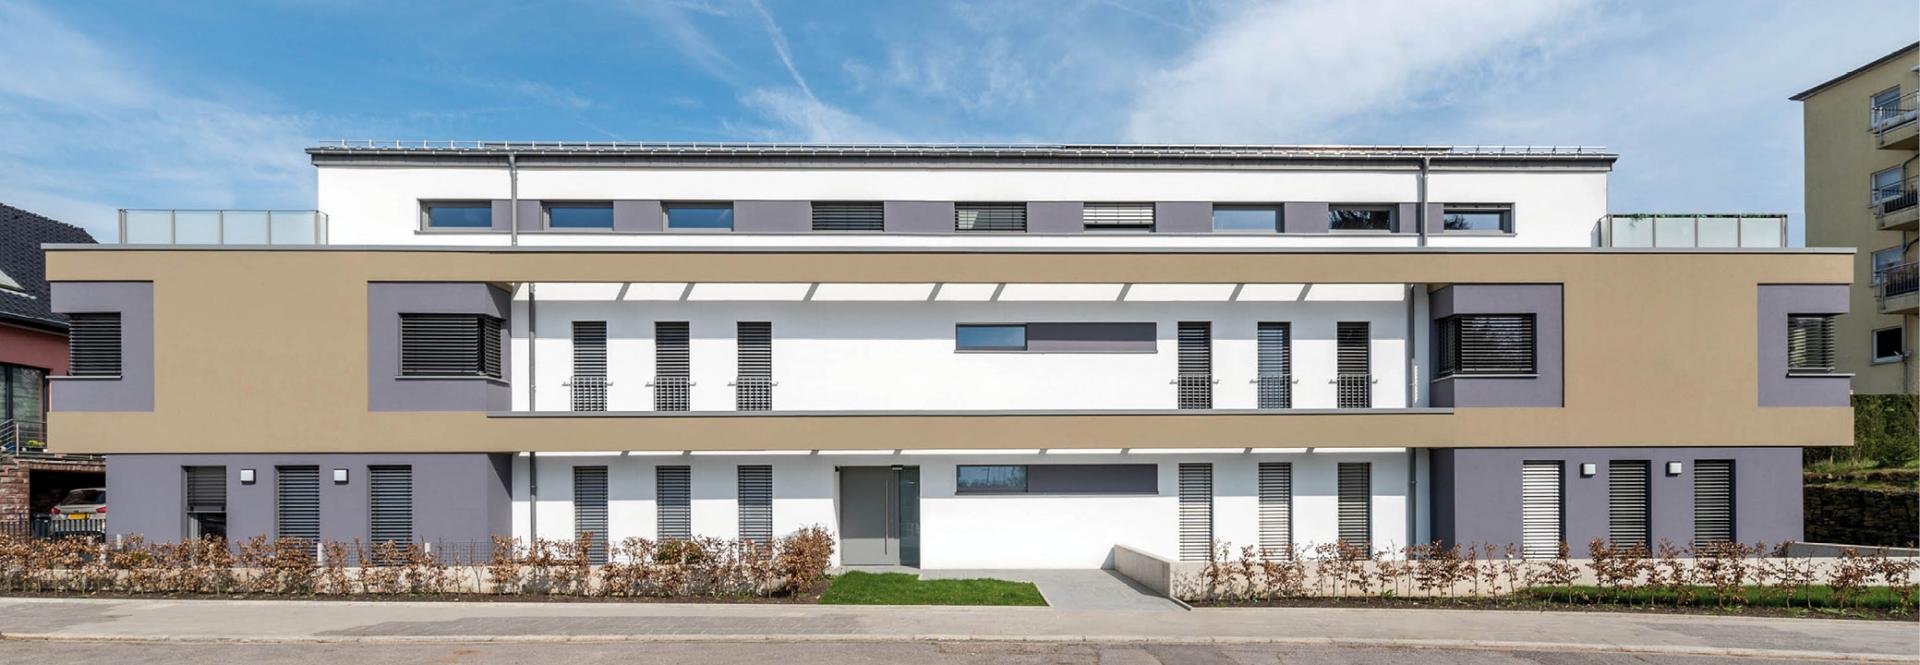 6 immeuble résidentiel passif « St Fiacre » à Weimerskirch